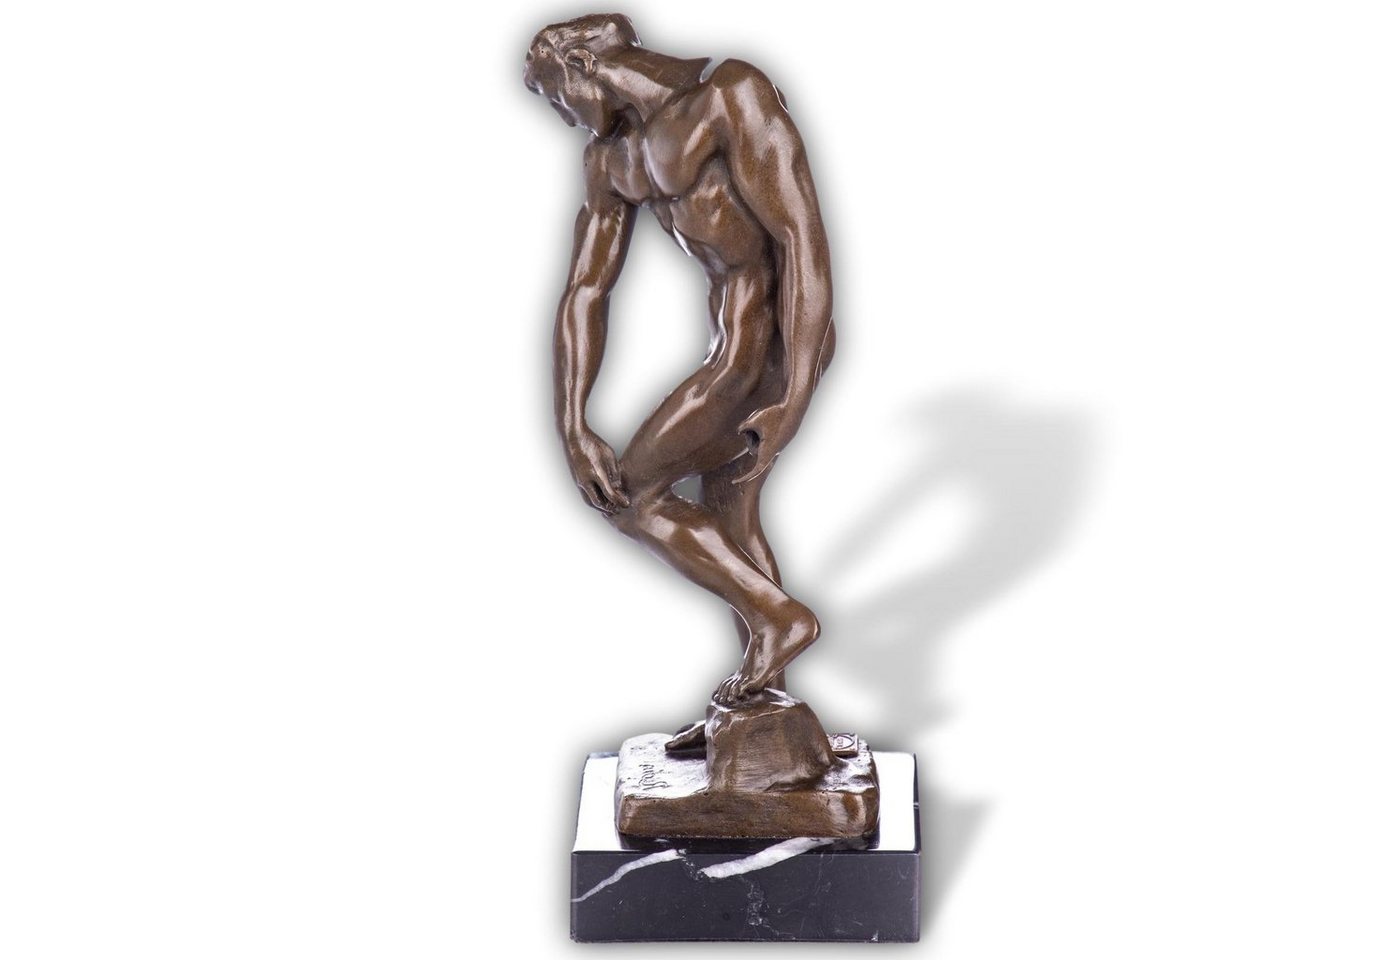 Aubaho Skulptur Skulptur Bronze Figur Akt Adam nach Rodin 20cm Antik-Stil Replik Kopie von Aubaho